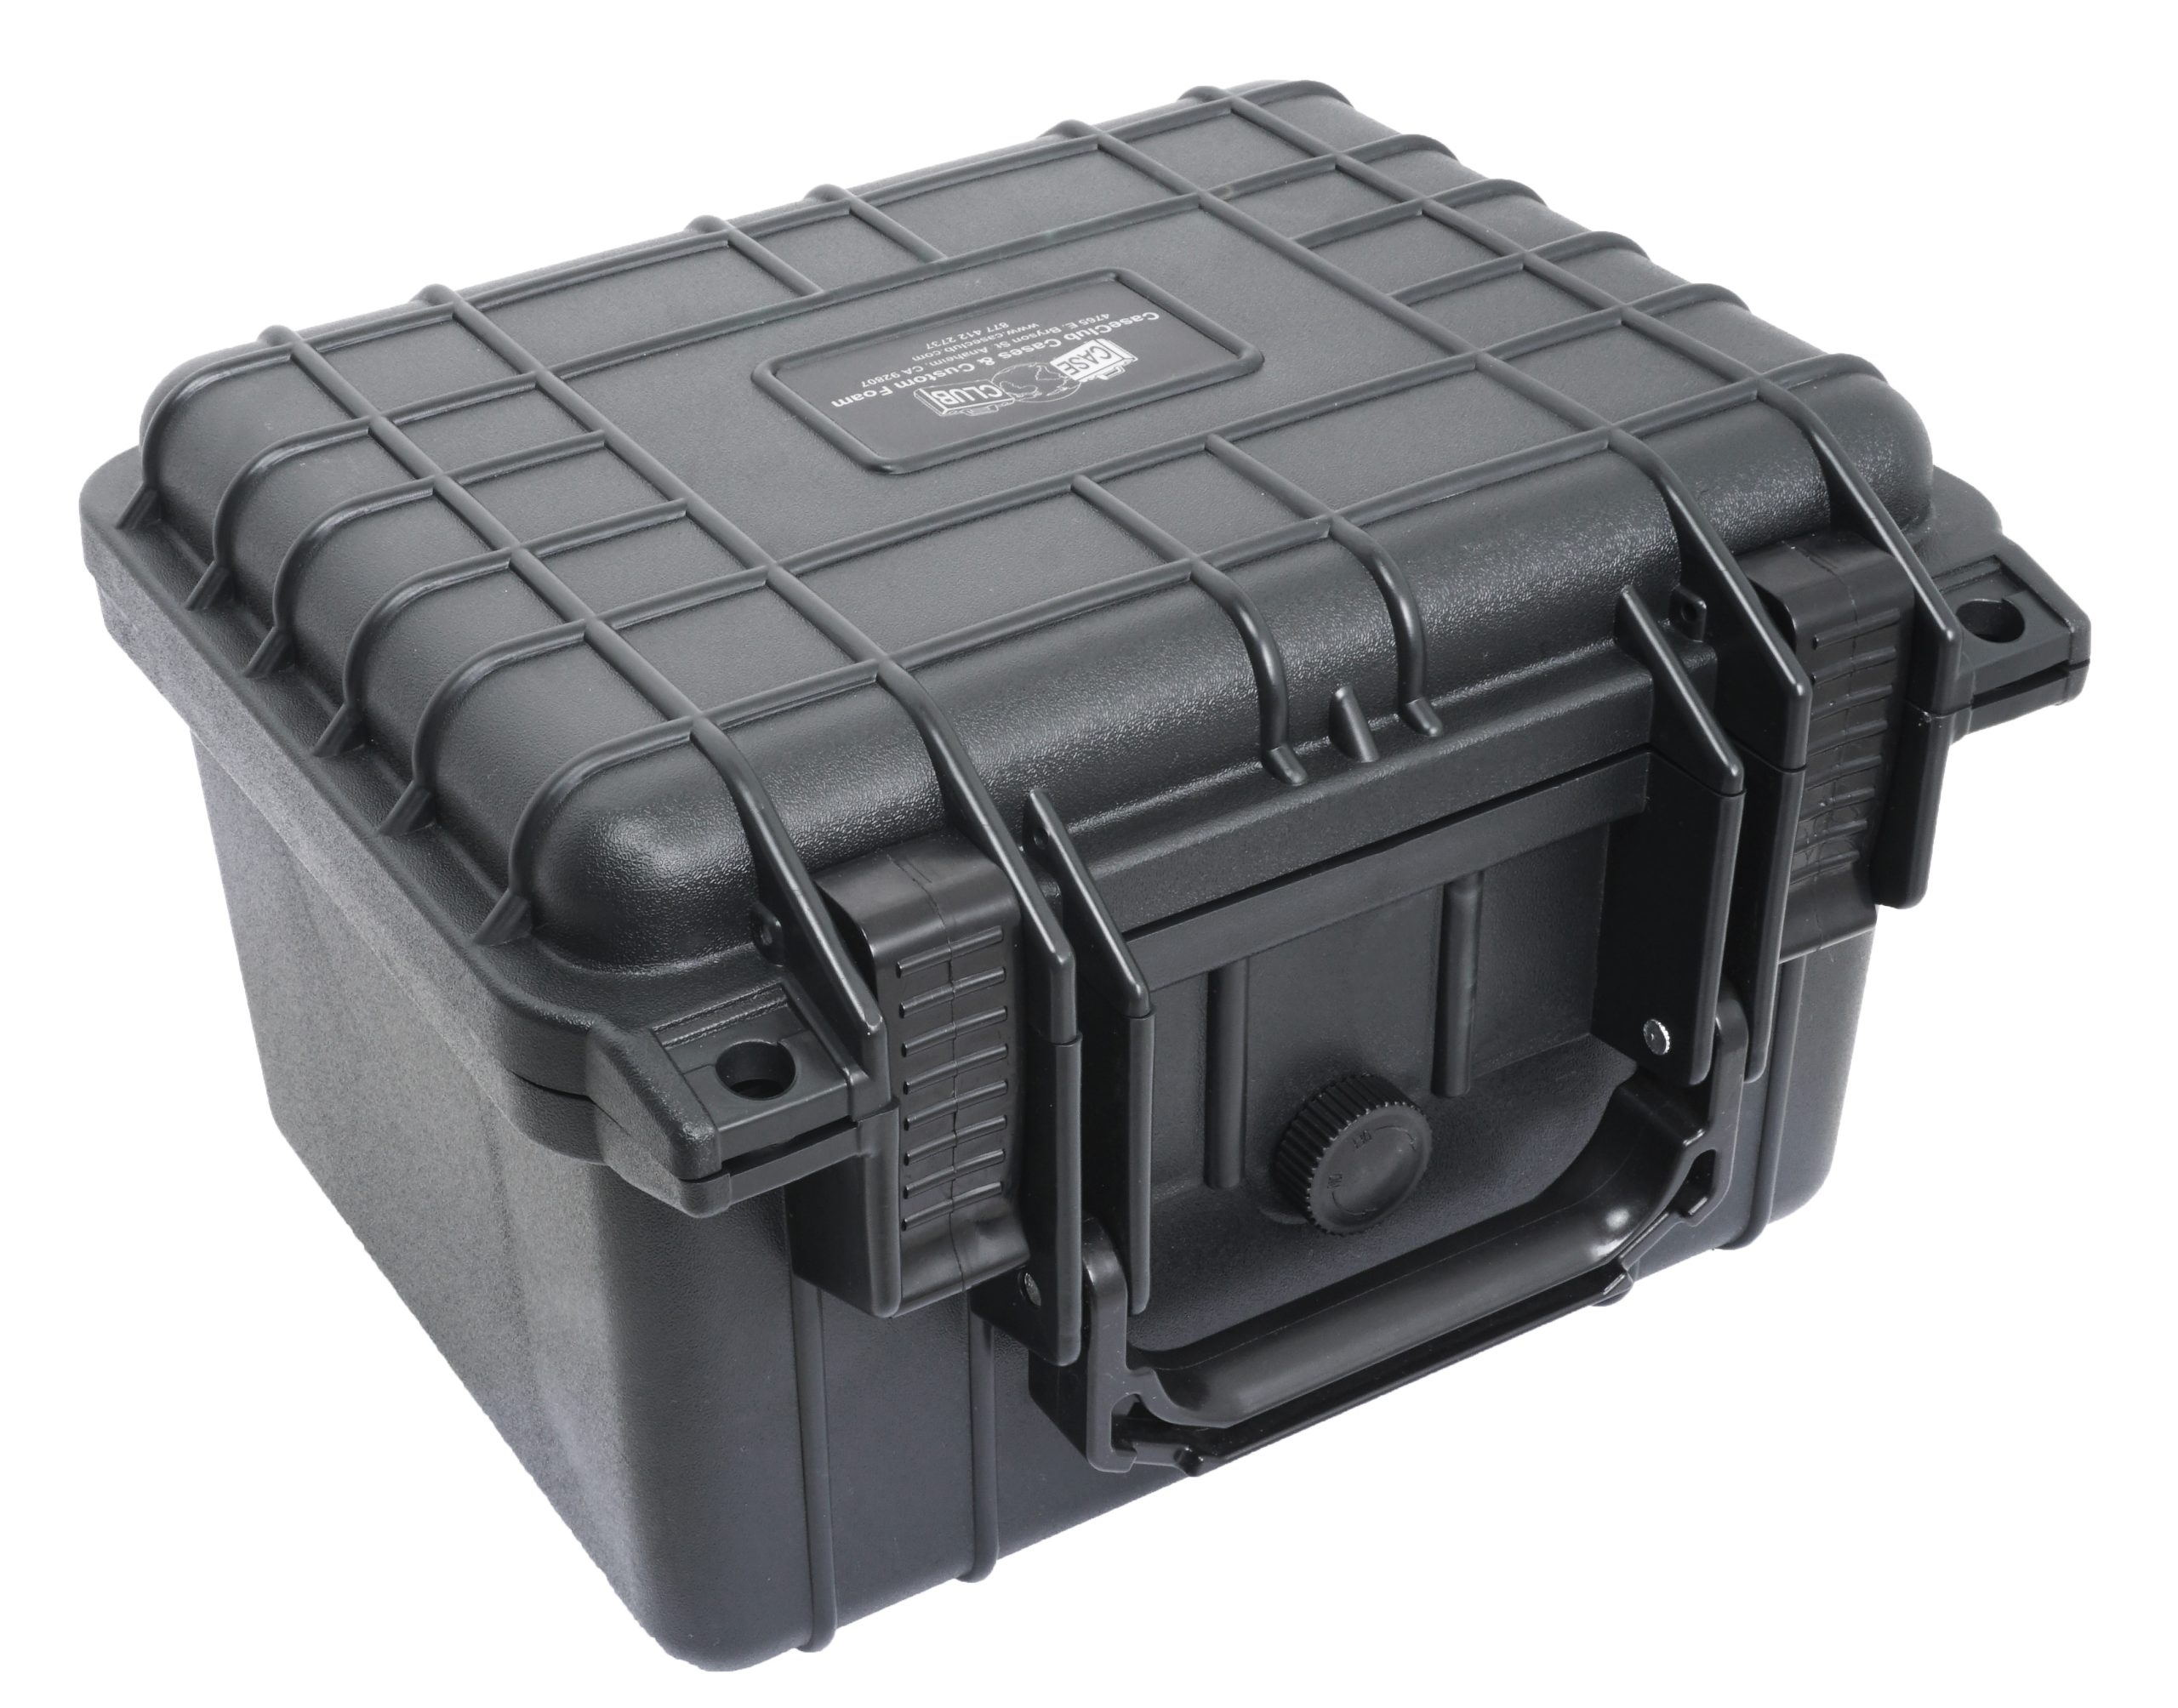 Case Club 3 Pistol Waterproof Case with Silica Gel & Heavy-Duty Foam